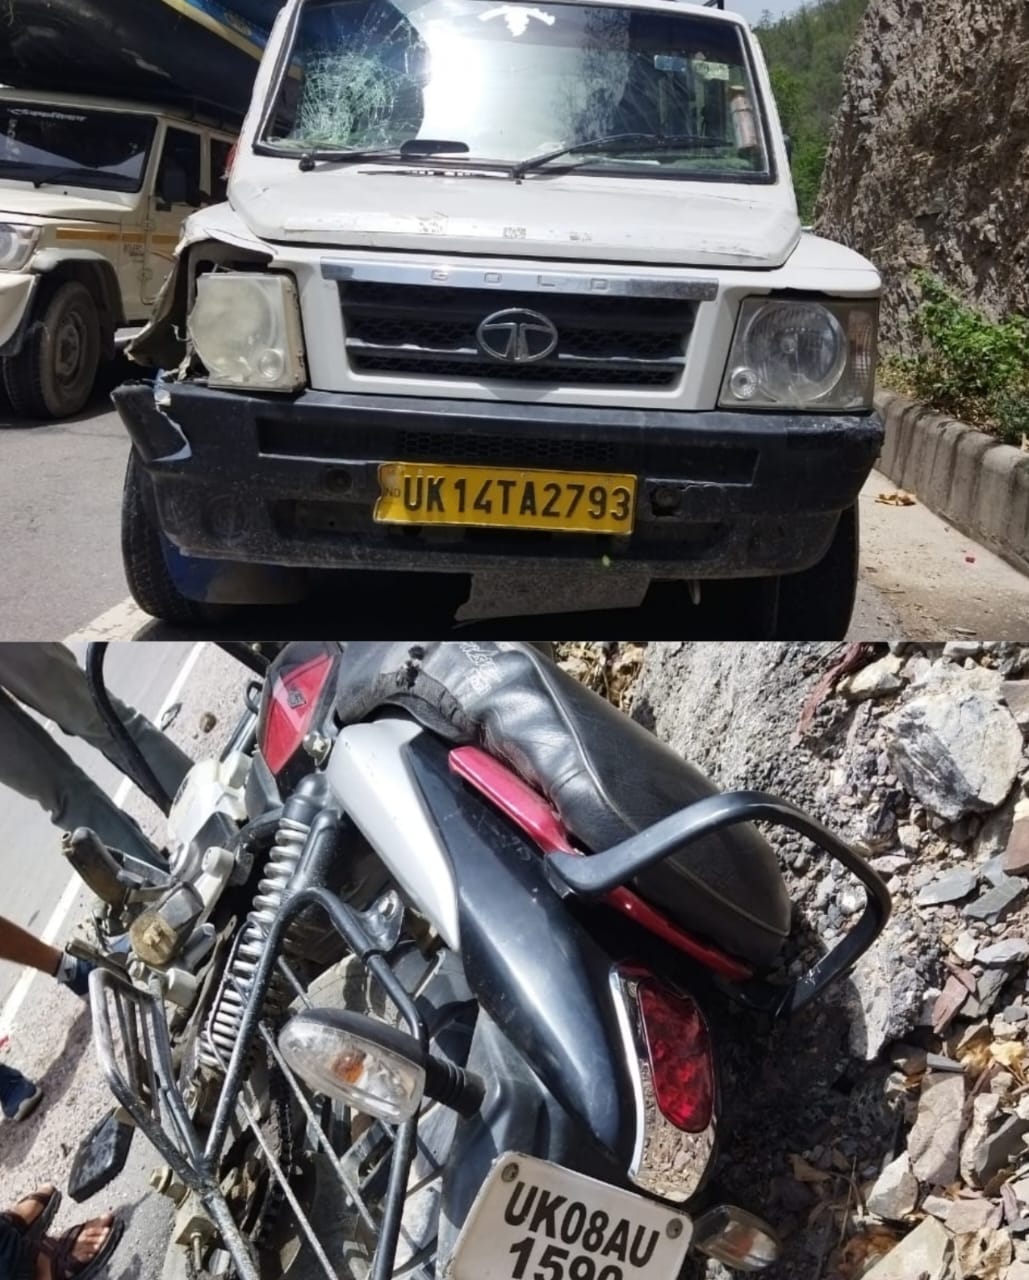 शिवपुरी चौकी क्षेत्र के कलथरी मुख्य सड़क पर टाटा सुमो एवं मोटरसाइकिल सवार की हुई भिड़ंत मोटरसाइकिल सवार गंभीर रूप से घायल